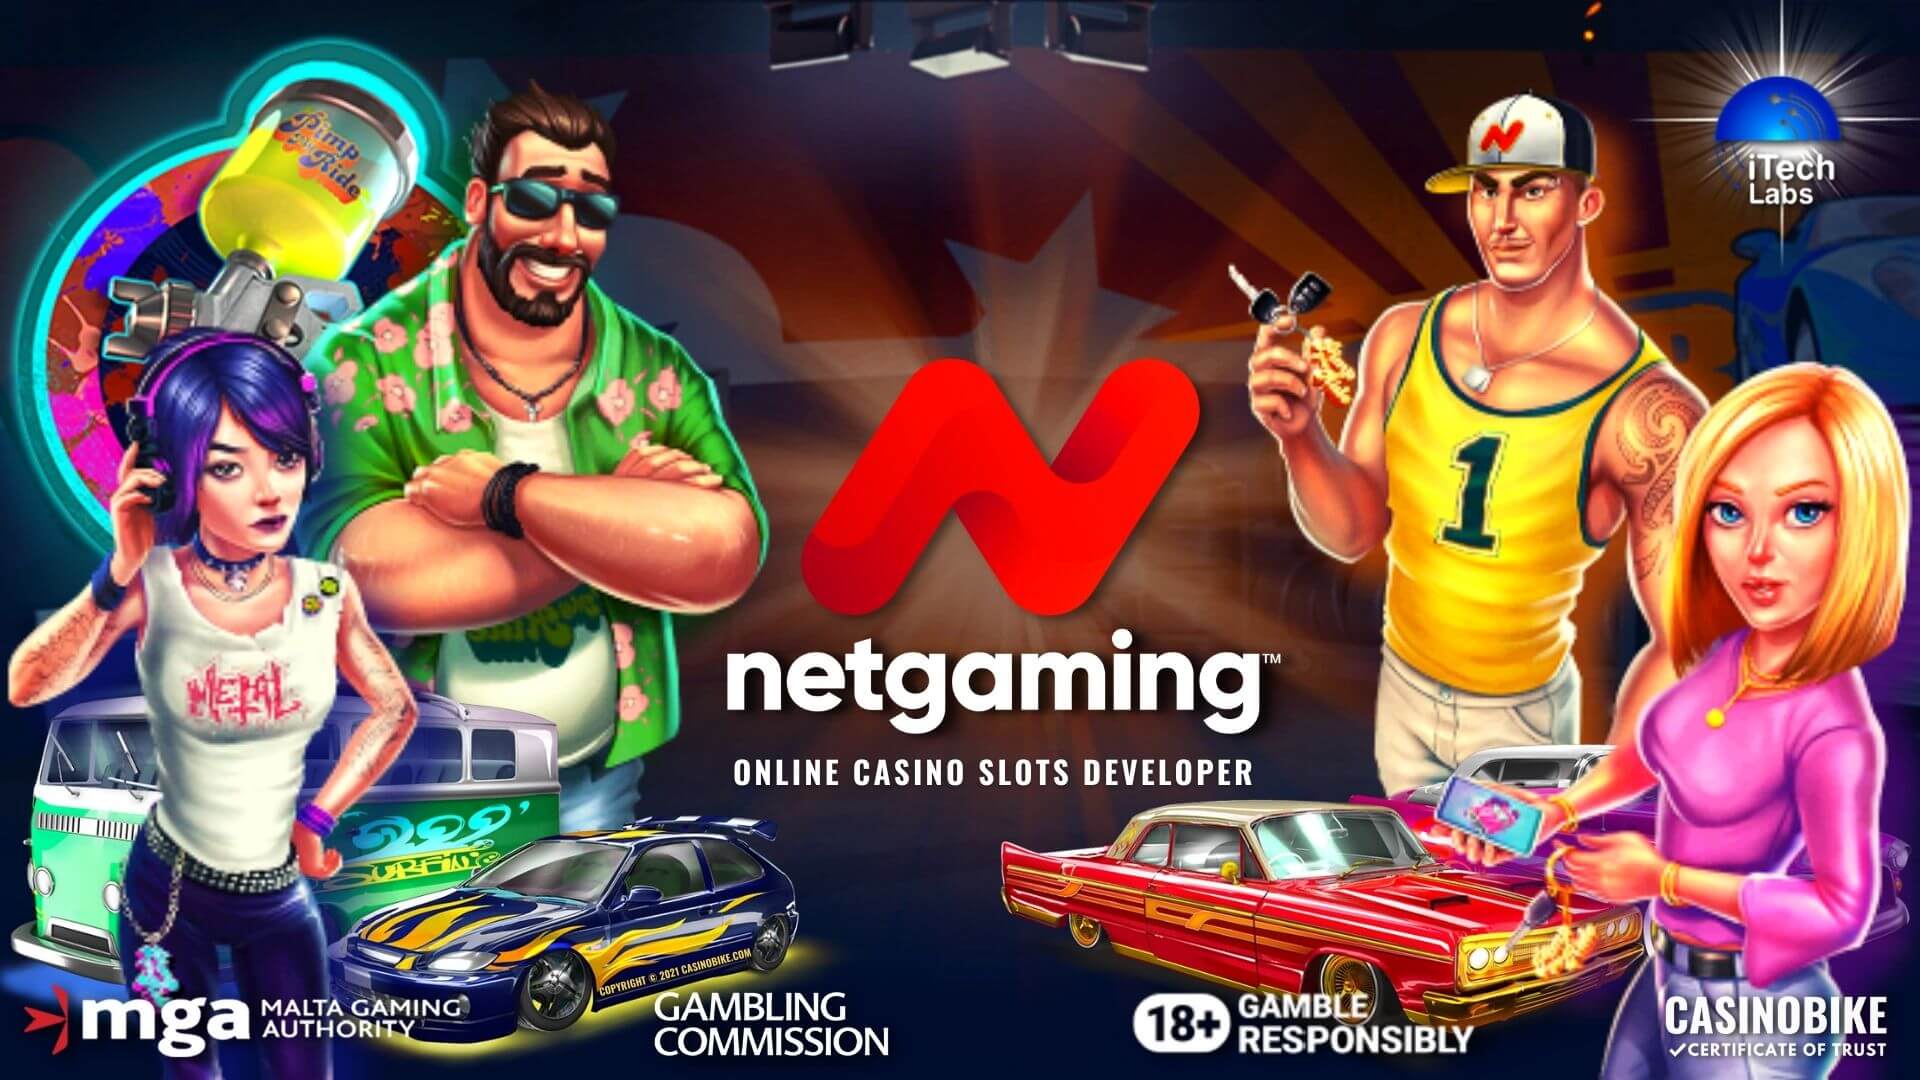 NetGaming Online Casino Slot Games Developer